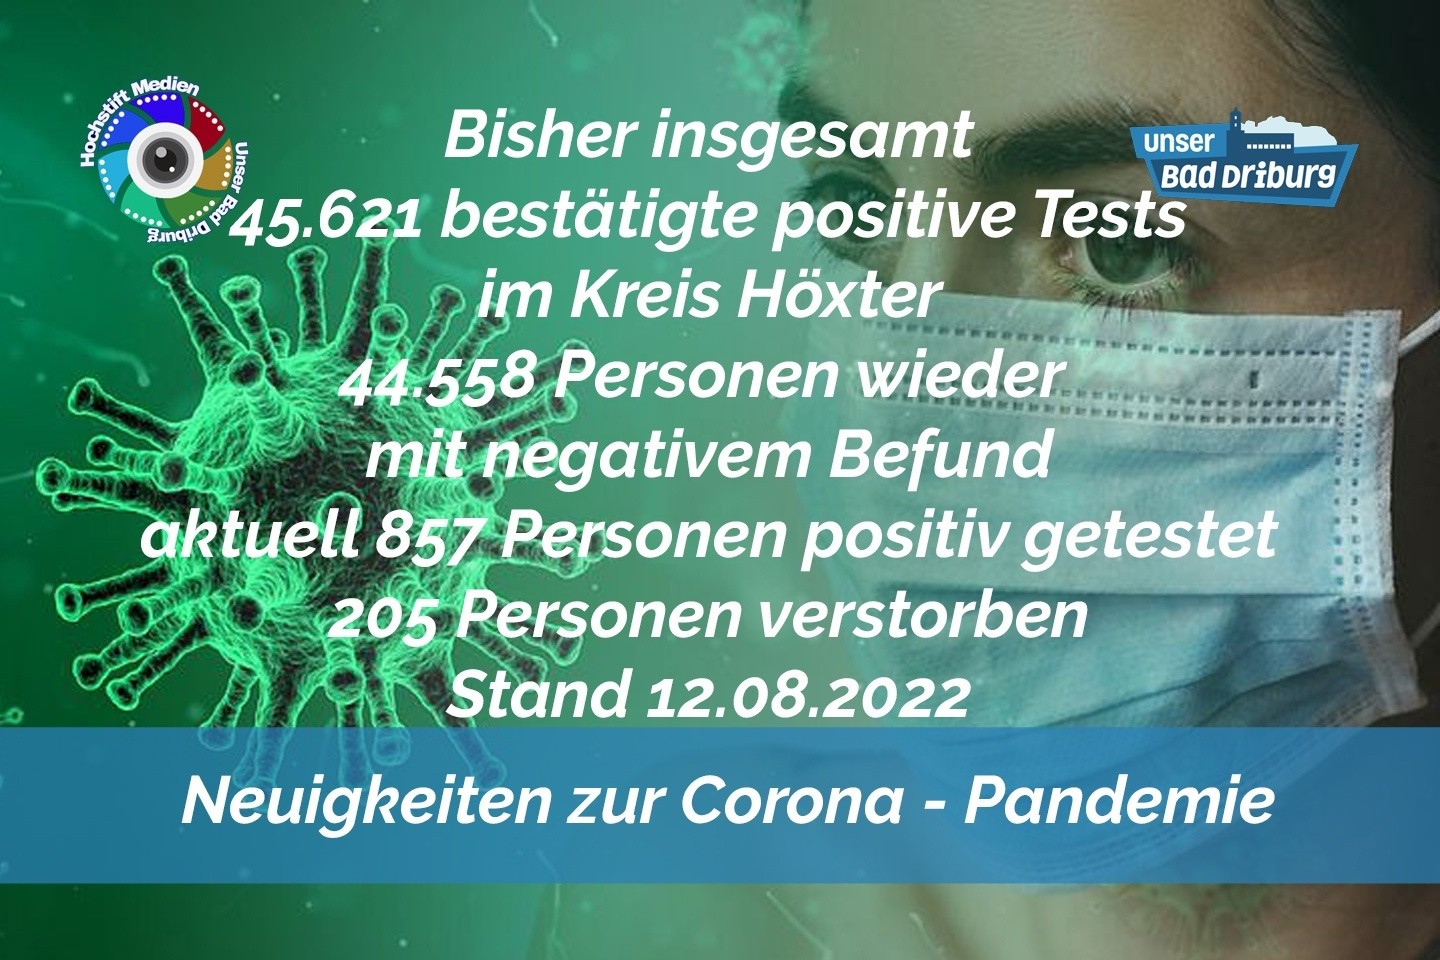 Update 12. August 2022: 118 weitere amtlich positive Tests im Kreis Höxter